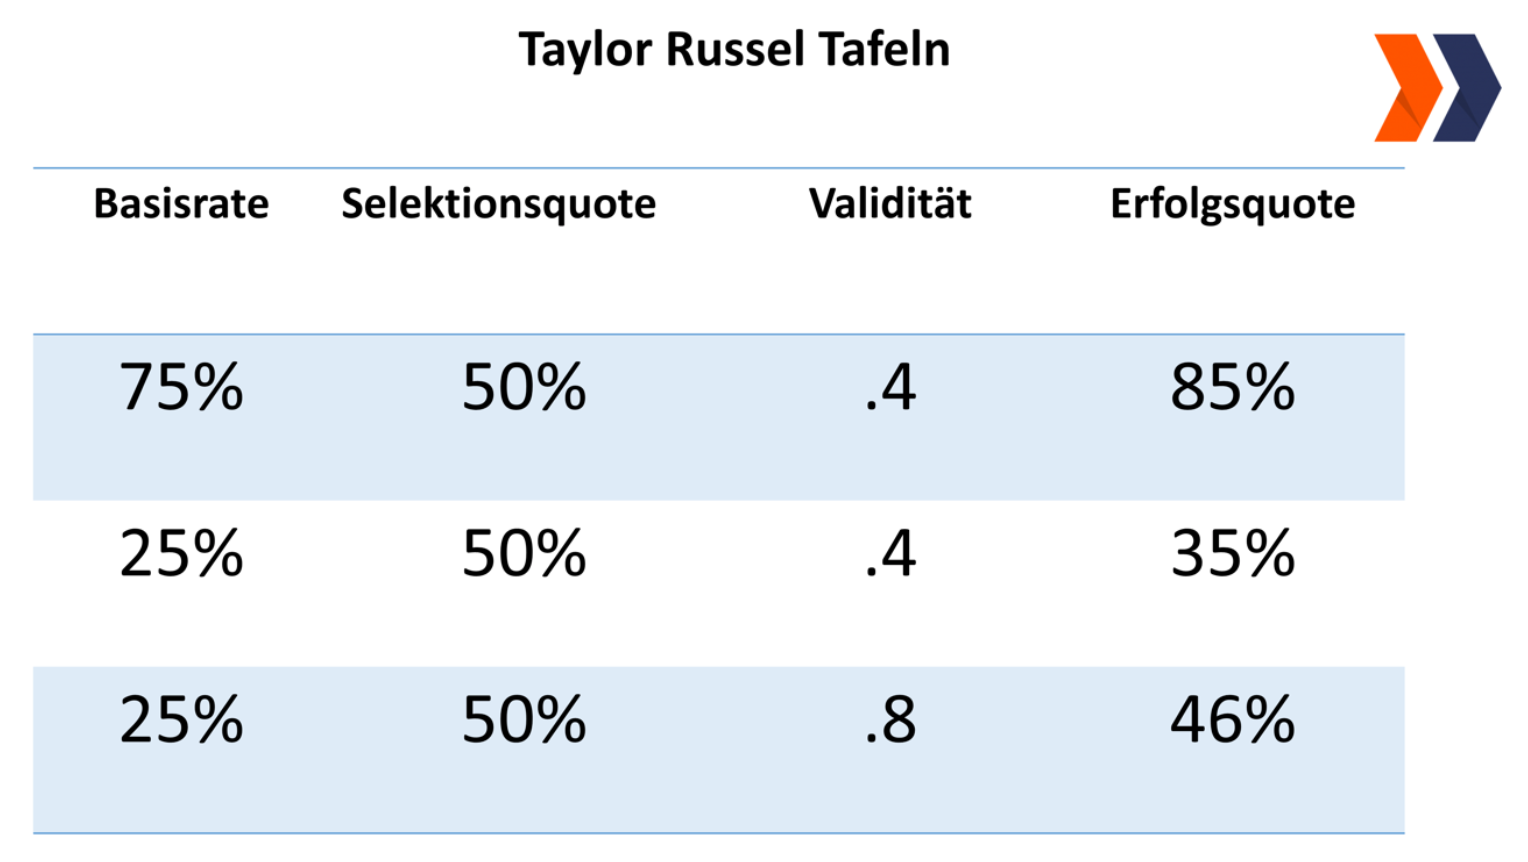 Taylor Russel Tafel für verschiedene Basisraten bei einer 50% Selektionsquote und Validitäten von .4 und .8